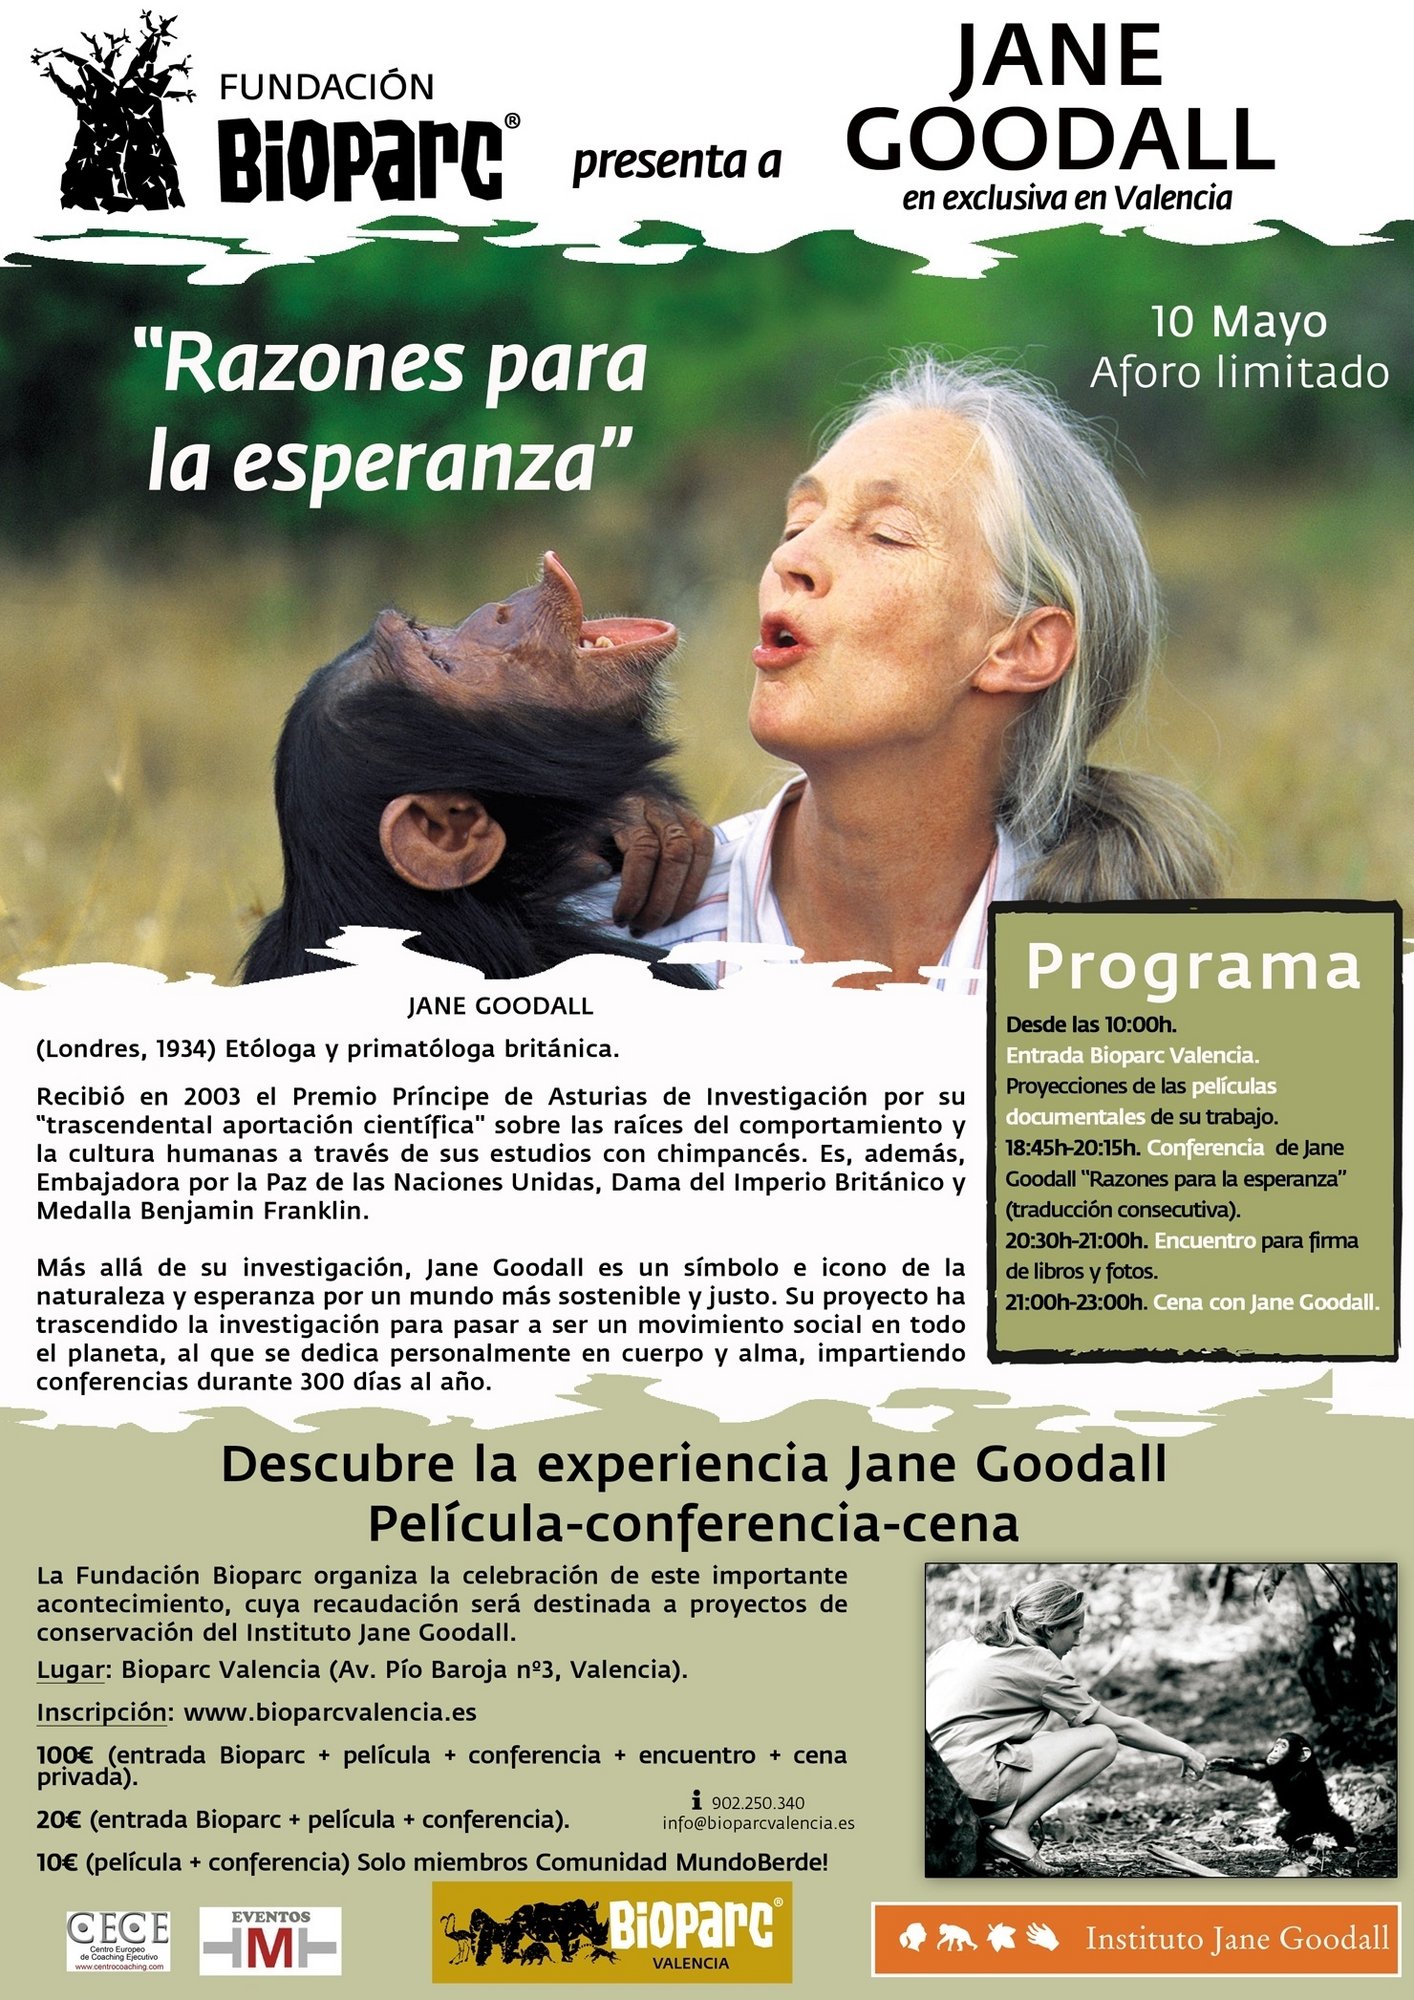 La etóloga Jane Goodall visitará Bioparc, en Valencia, para compartir su experiencia en el estudio de chimpancés